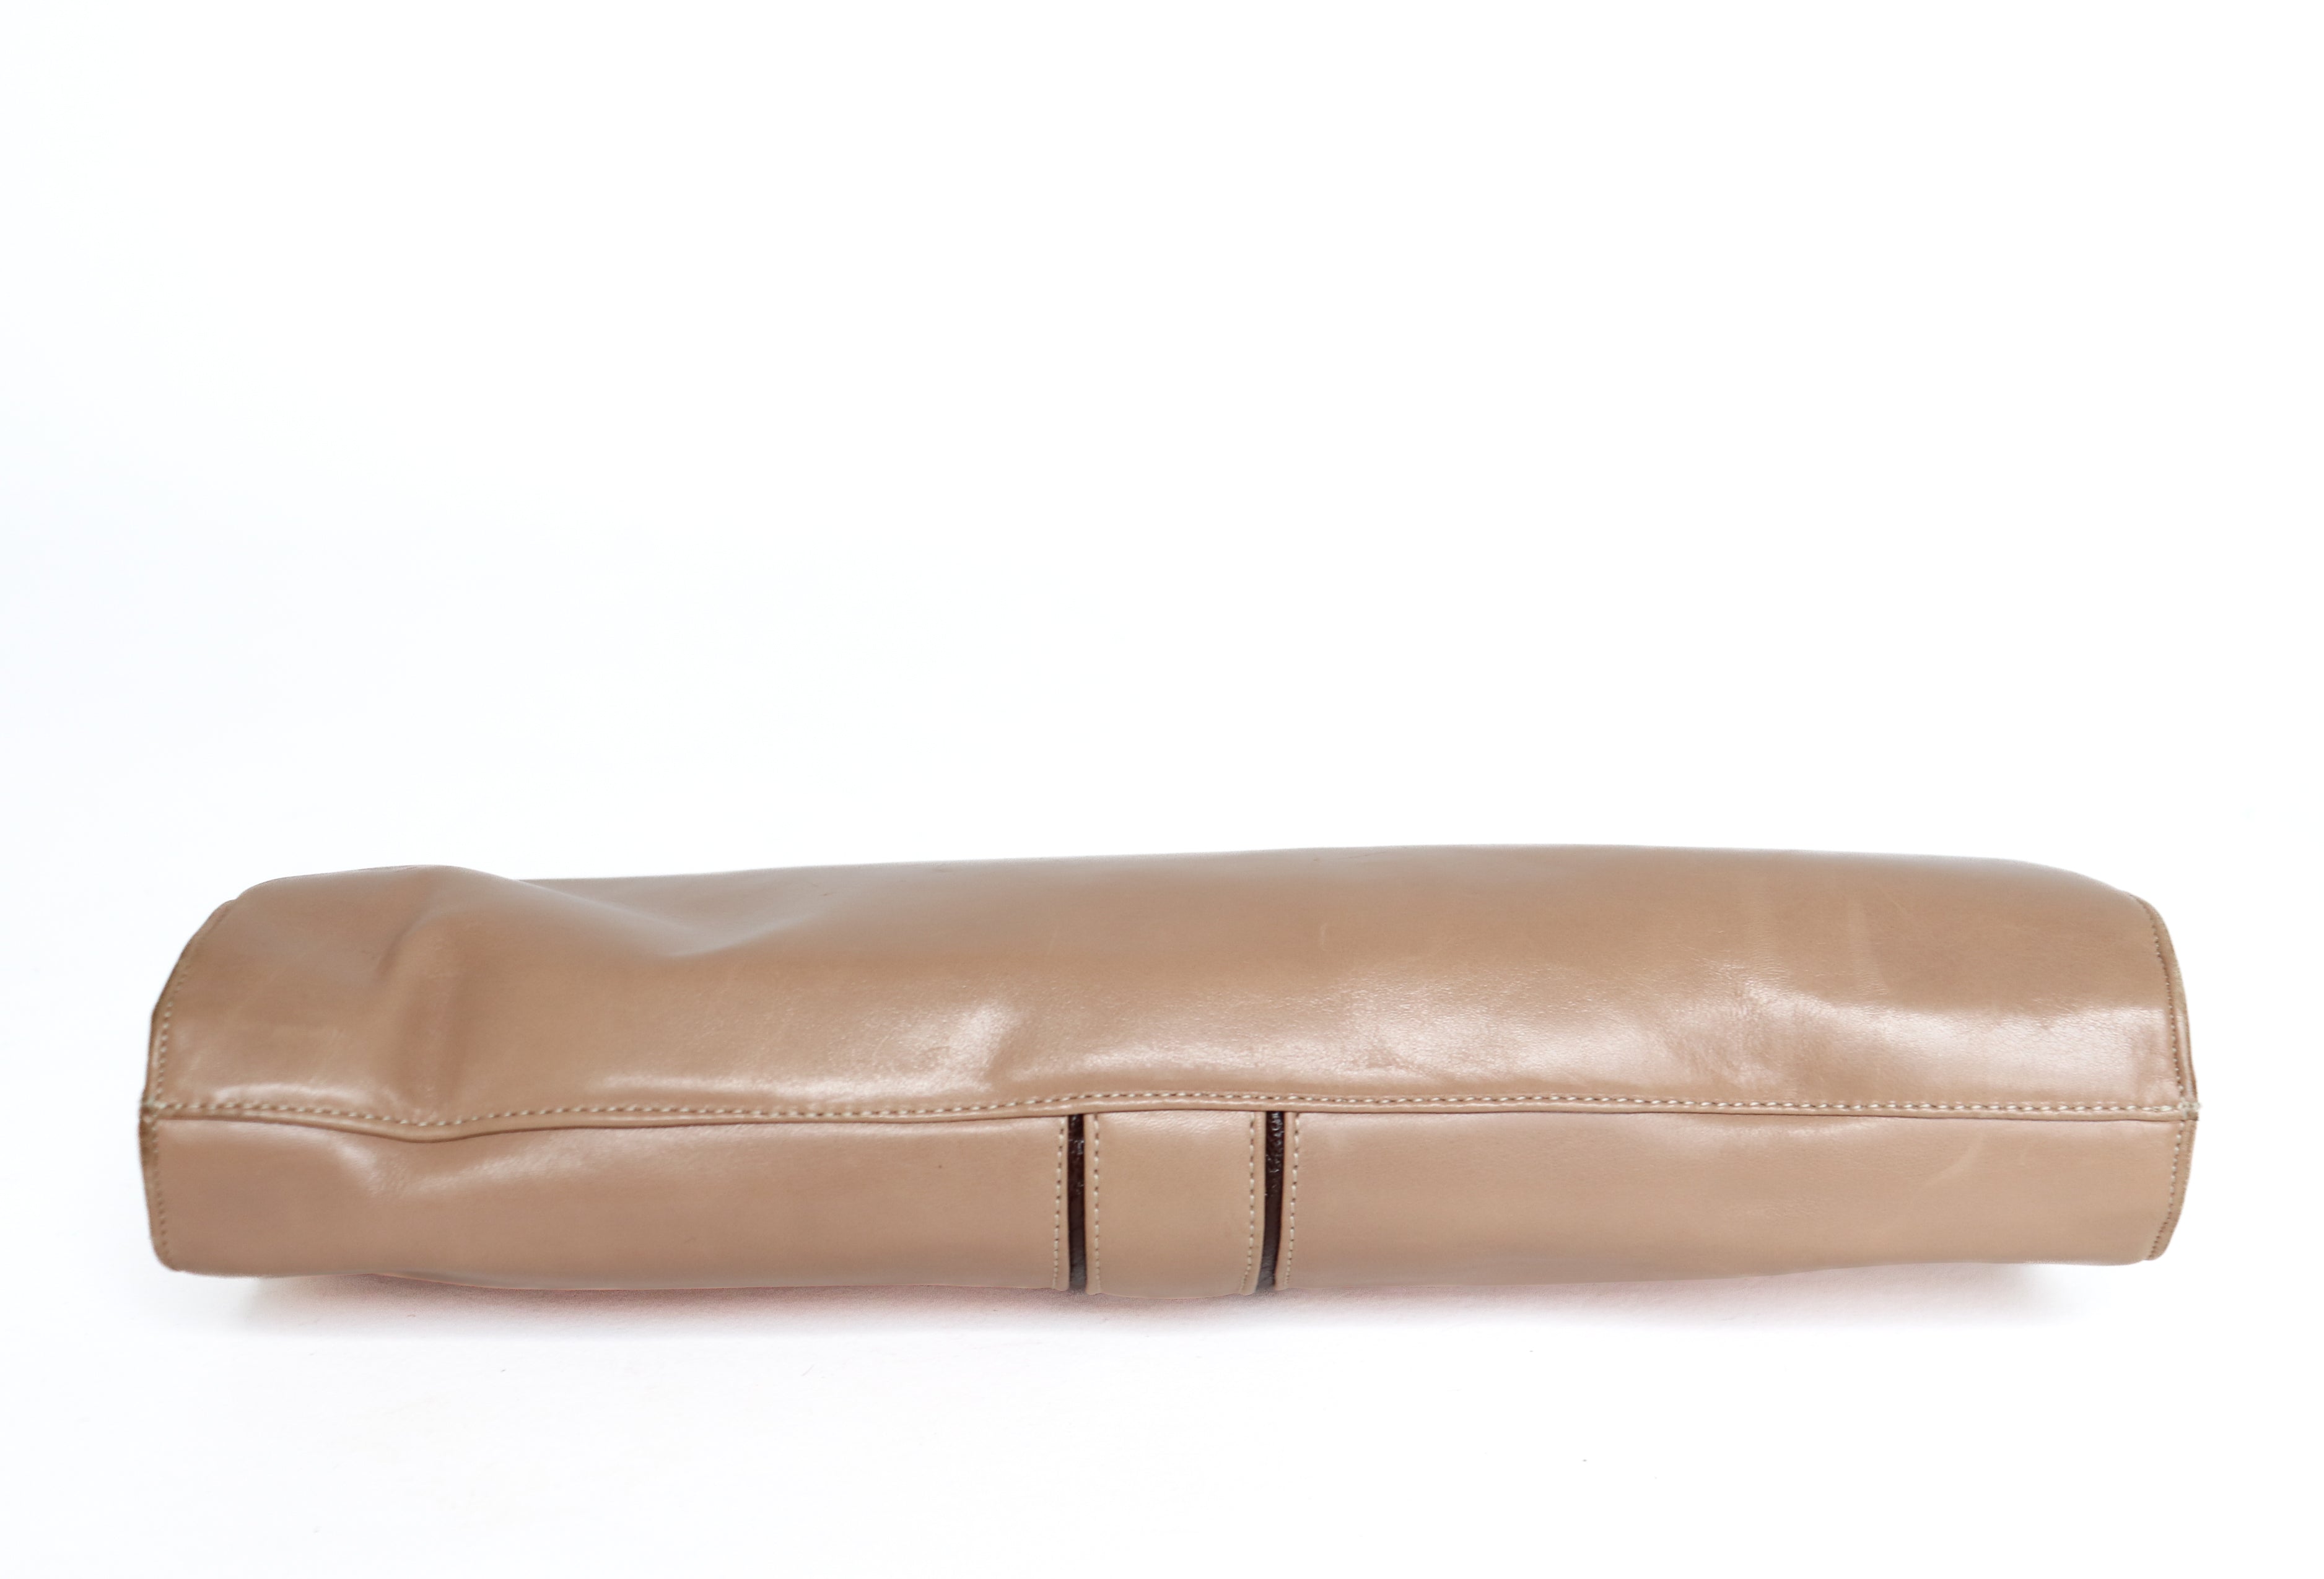 Renata Vintage Shoulder / Clutch Bag - Beige Leather - 1980s - Small